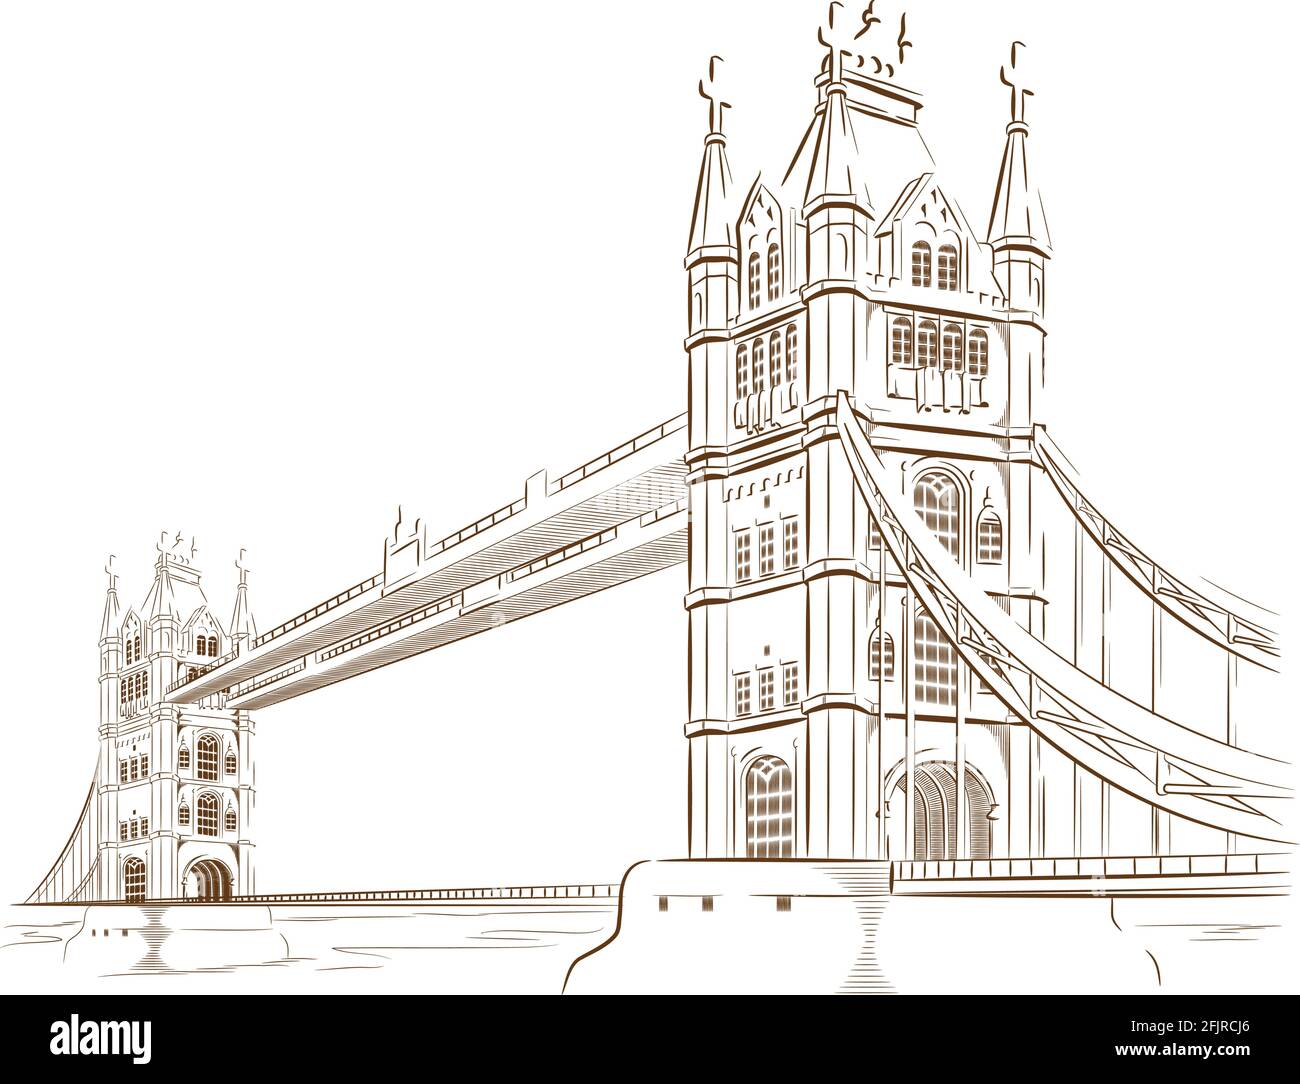 Skizze Doodle London Bridge Wahrzeichen Reiseziel Übersicht Stock Vektor